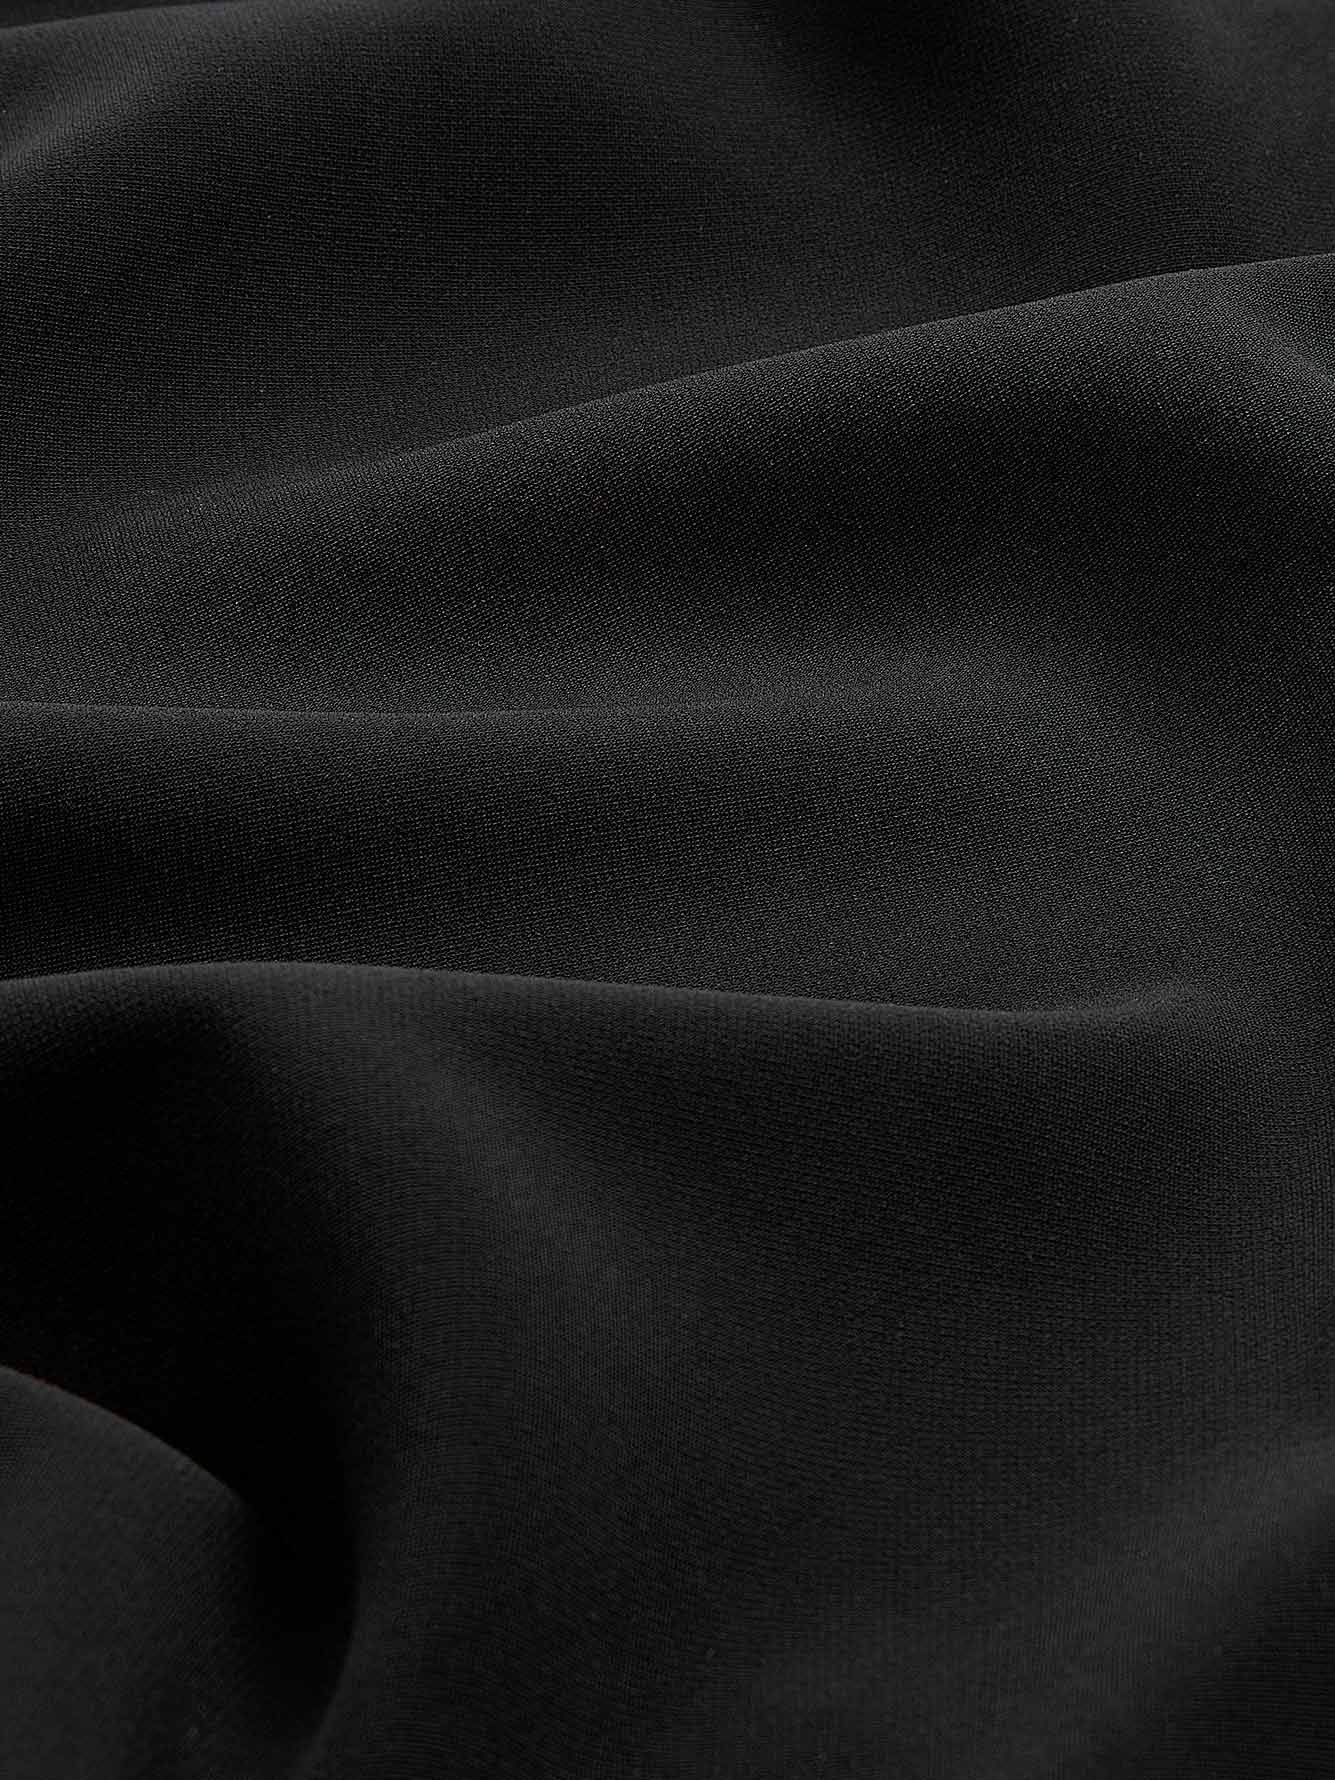 Robe courte noire ajustée asymétrique - Addition Elle